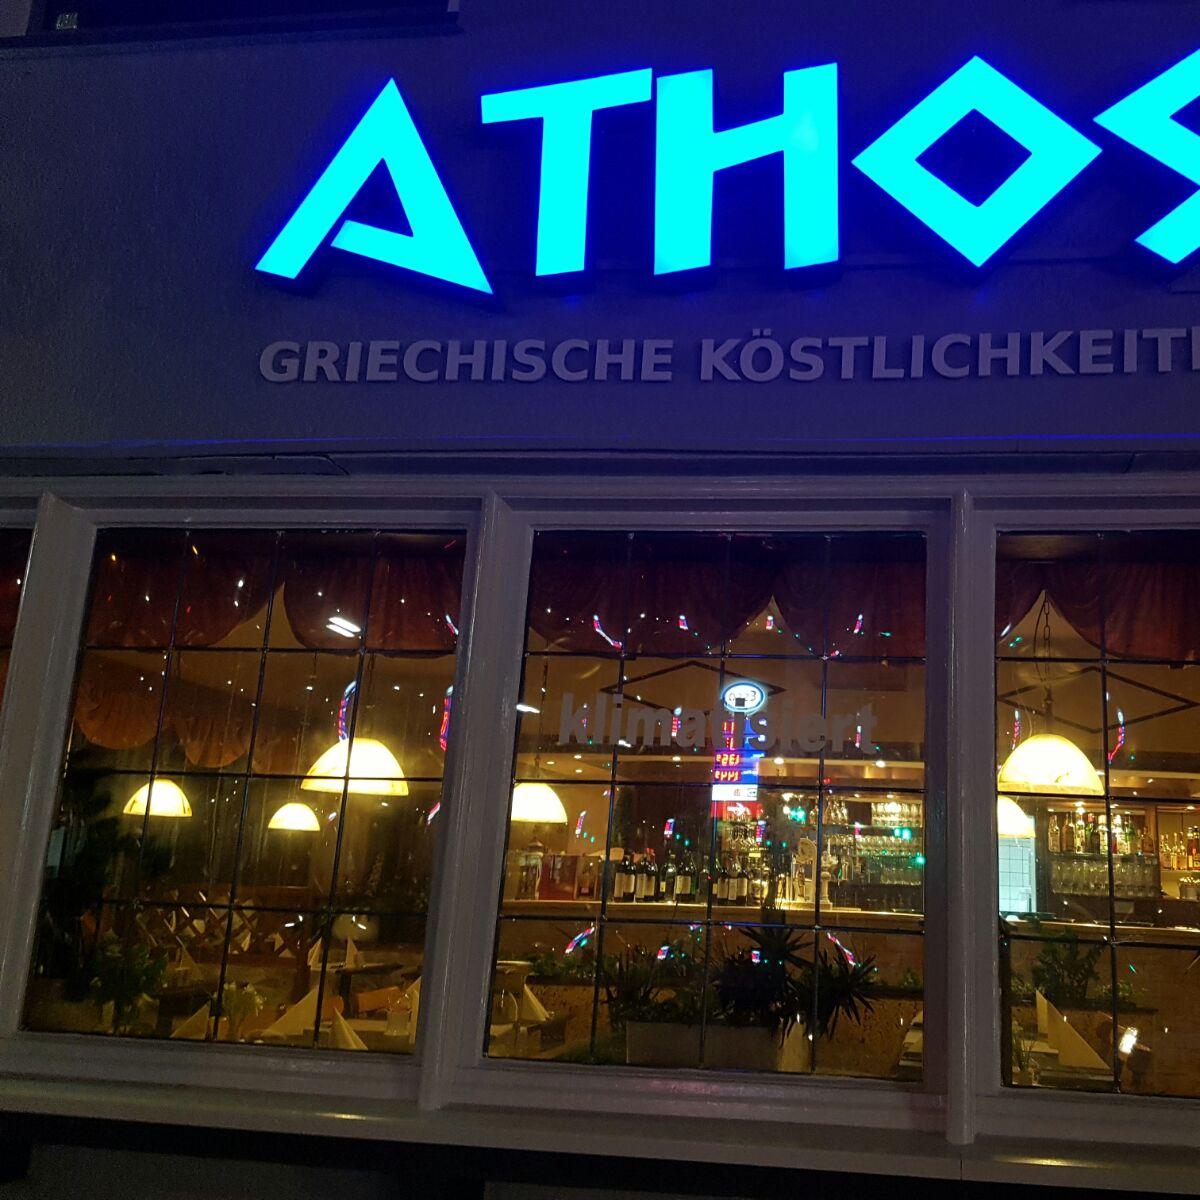 Restaurant "Restaurant Athos" in  Witten